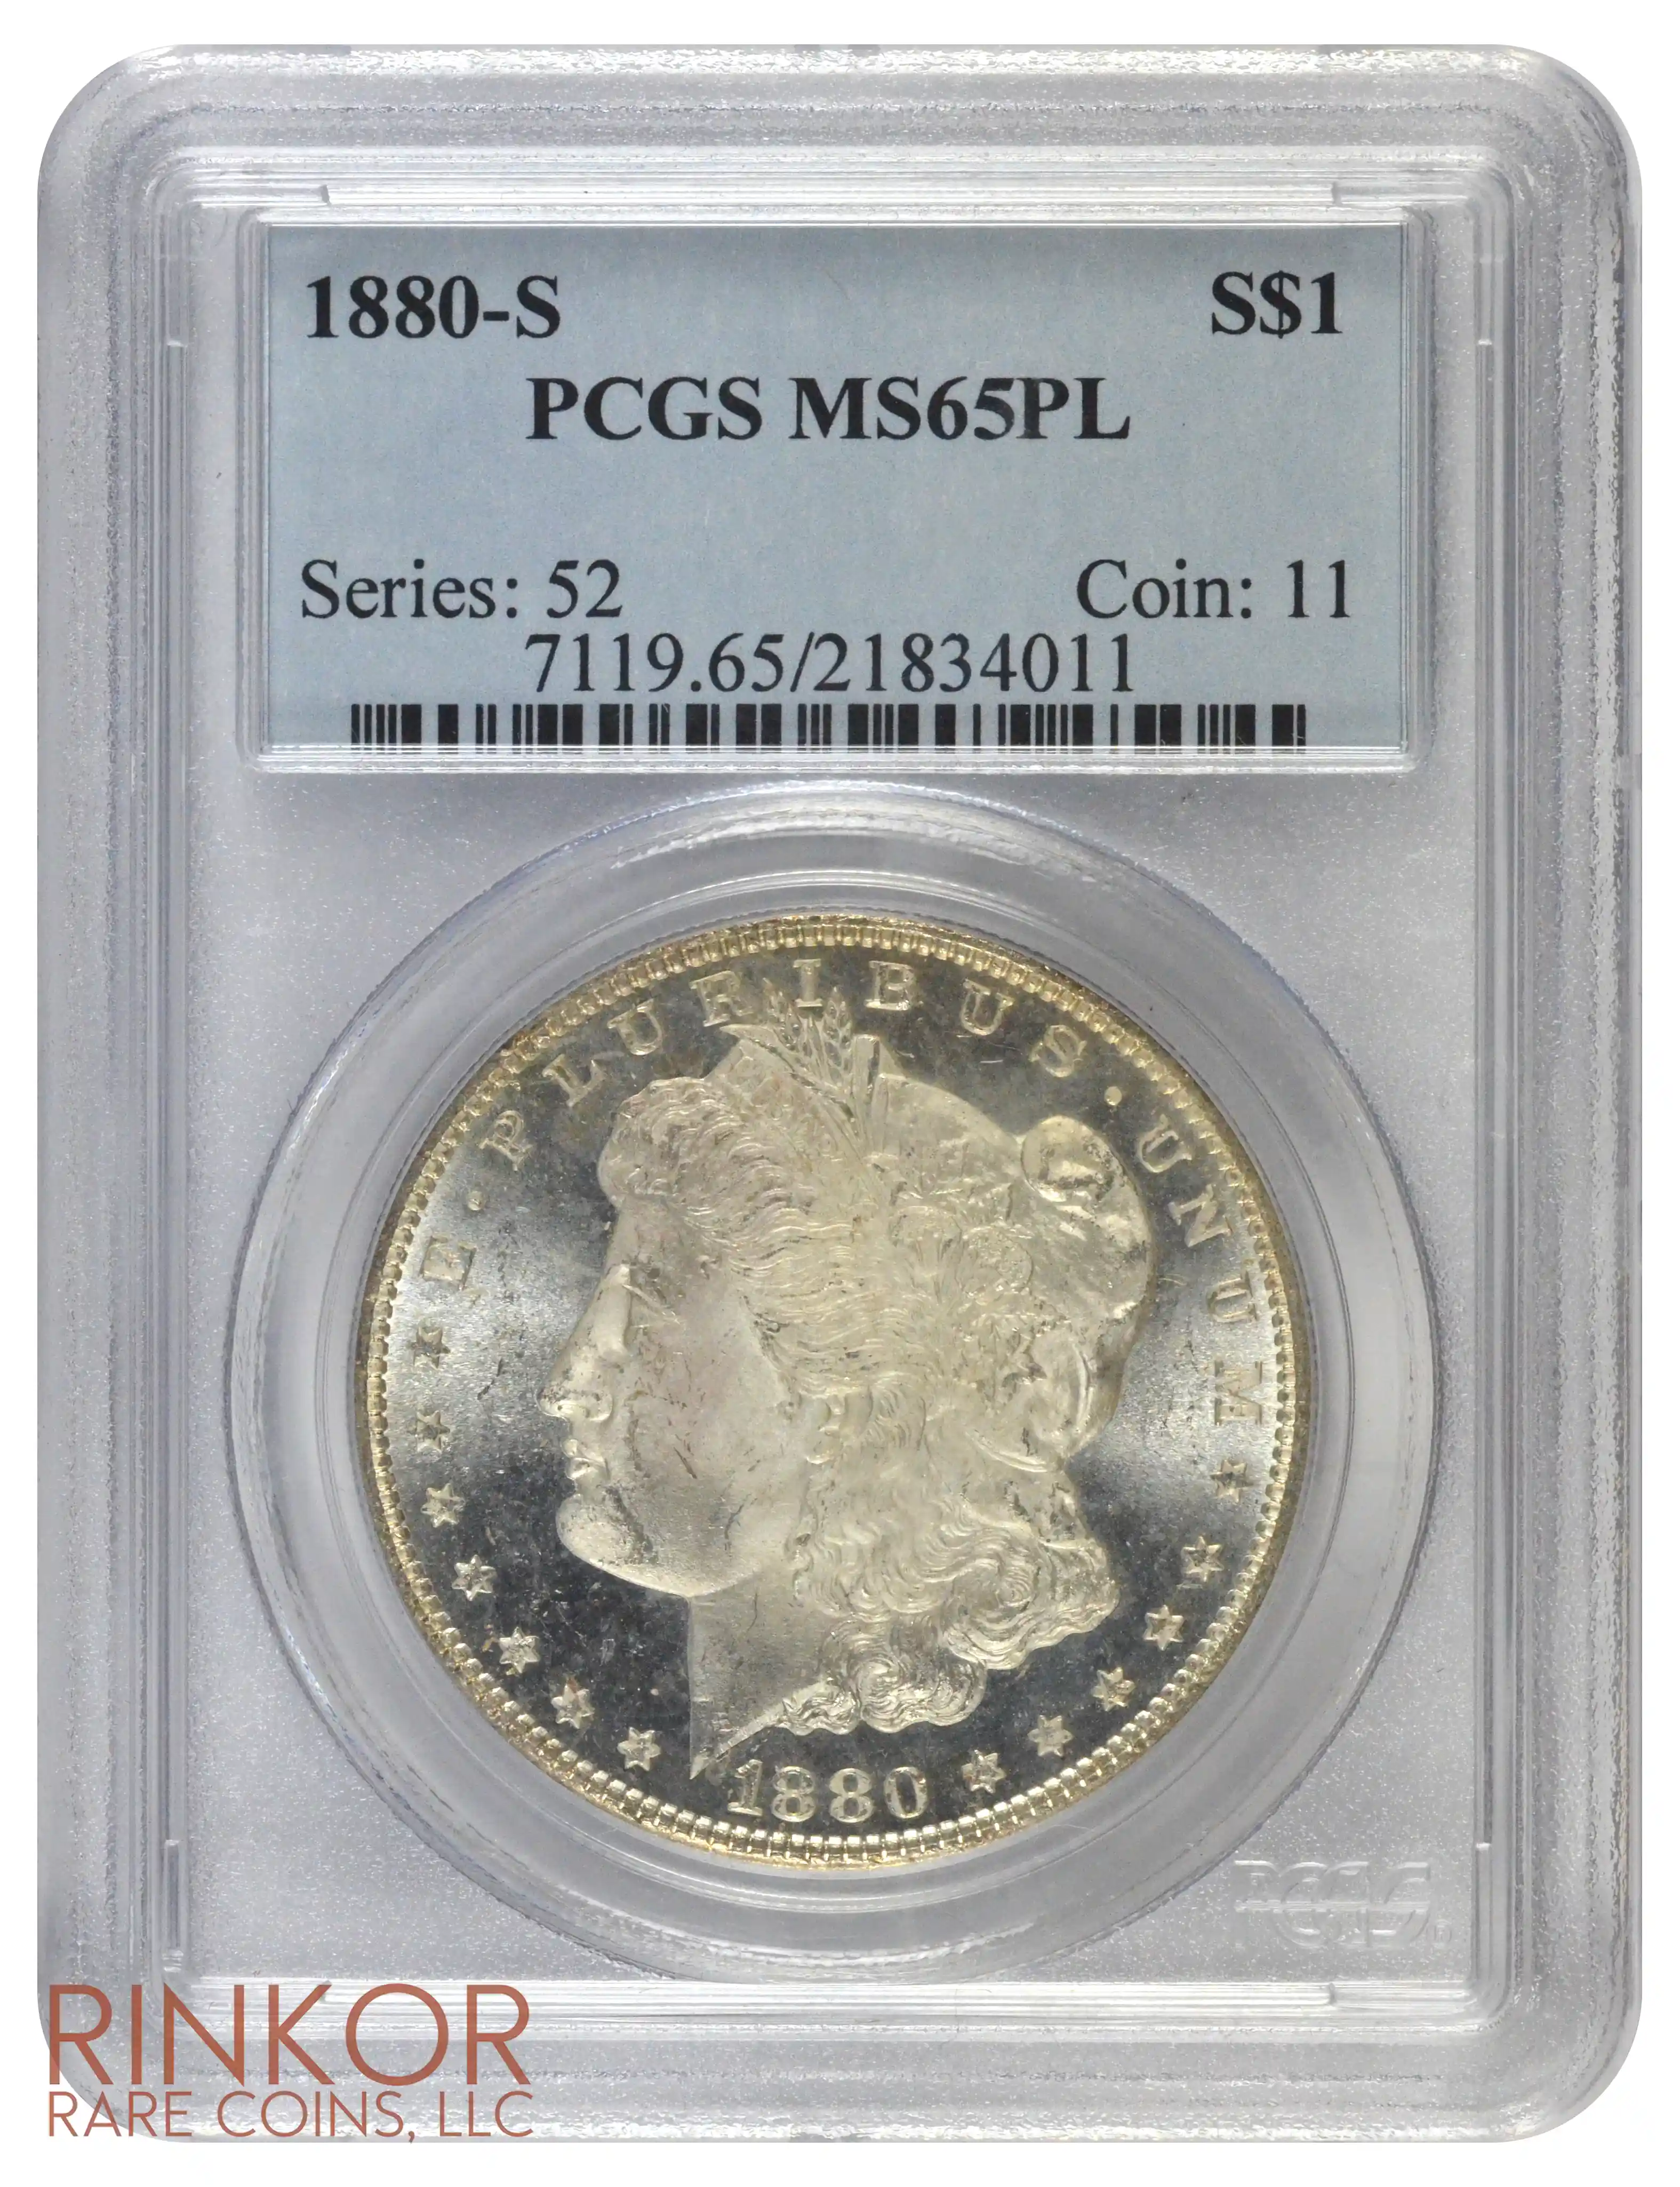 1880-S $1 PCGS MS 65 PL